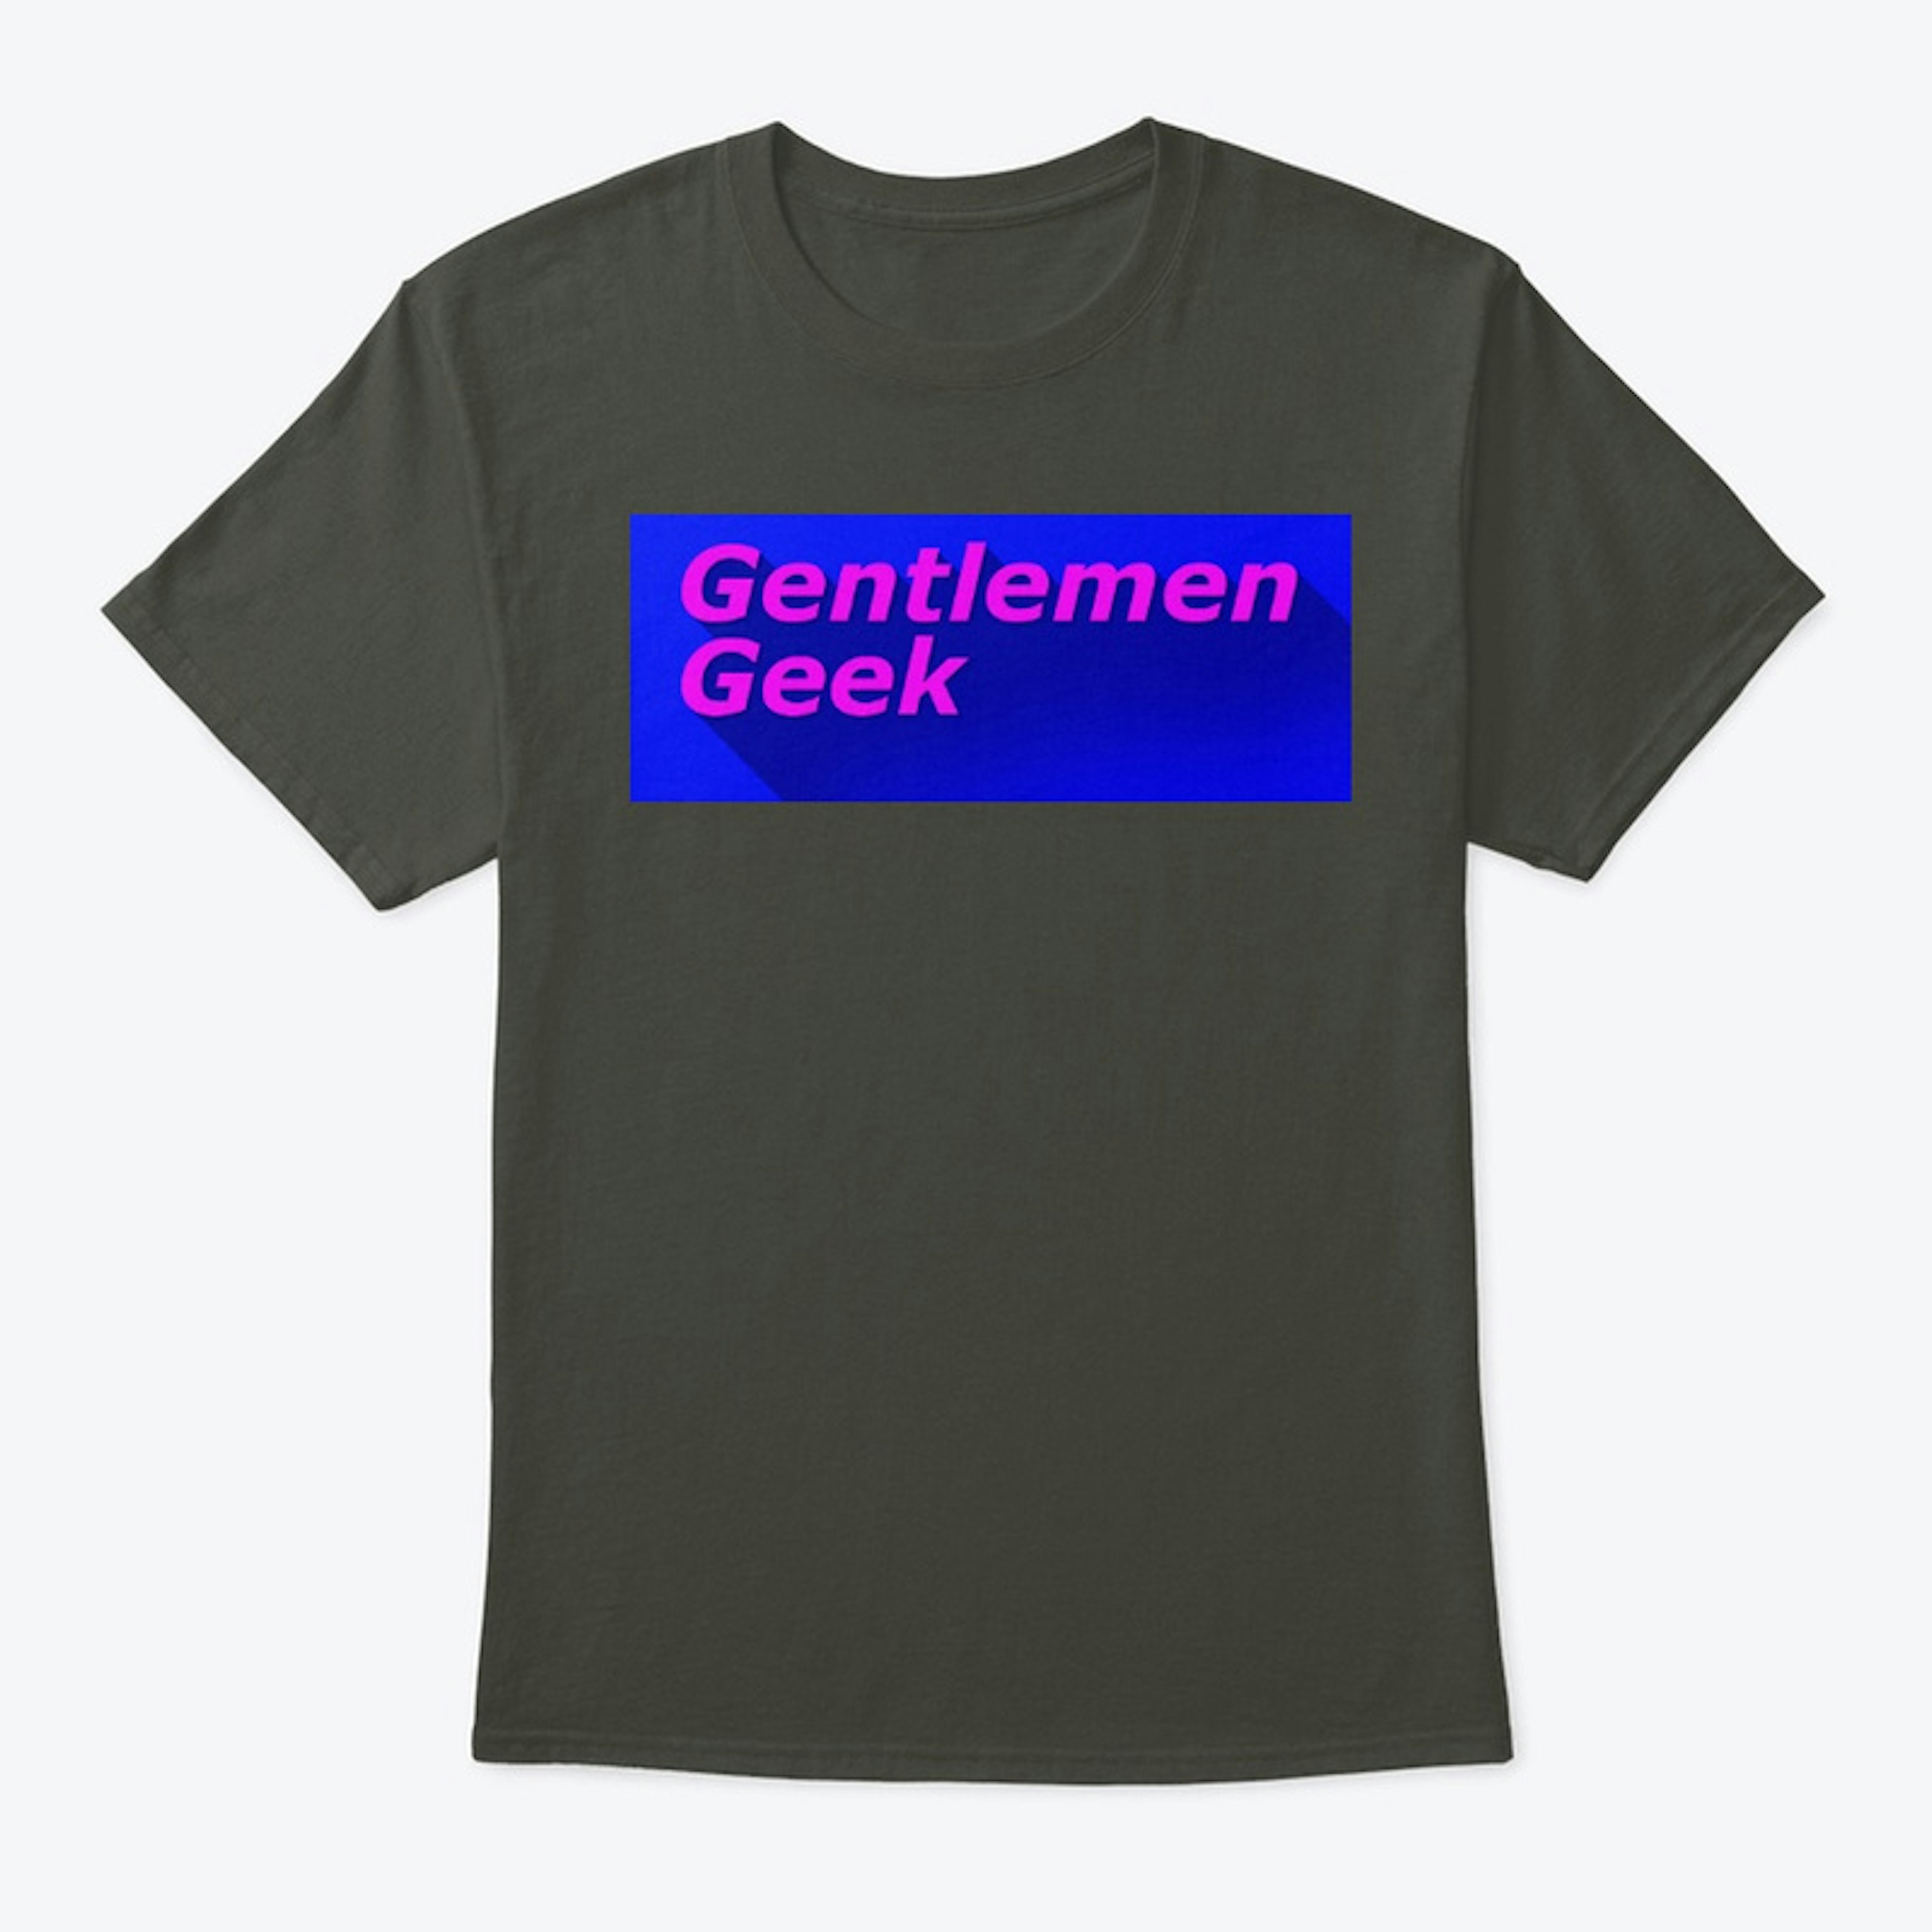 Gentlemen Geek Podcast